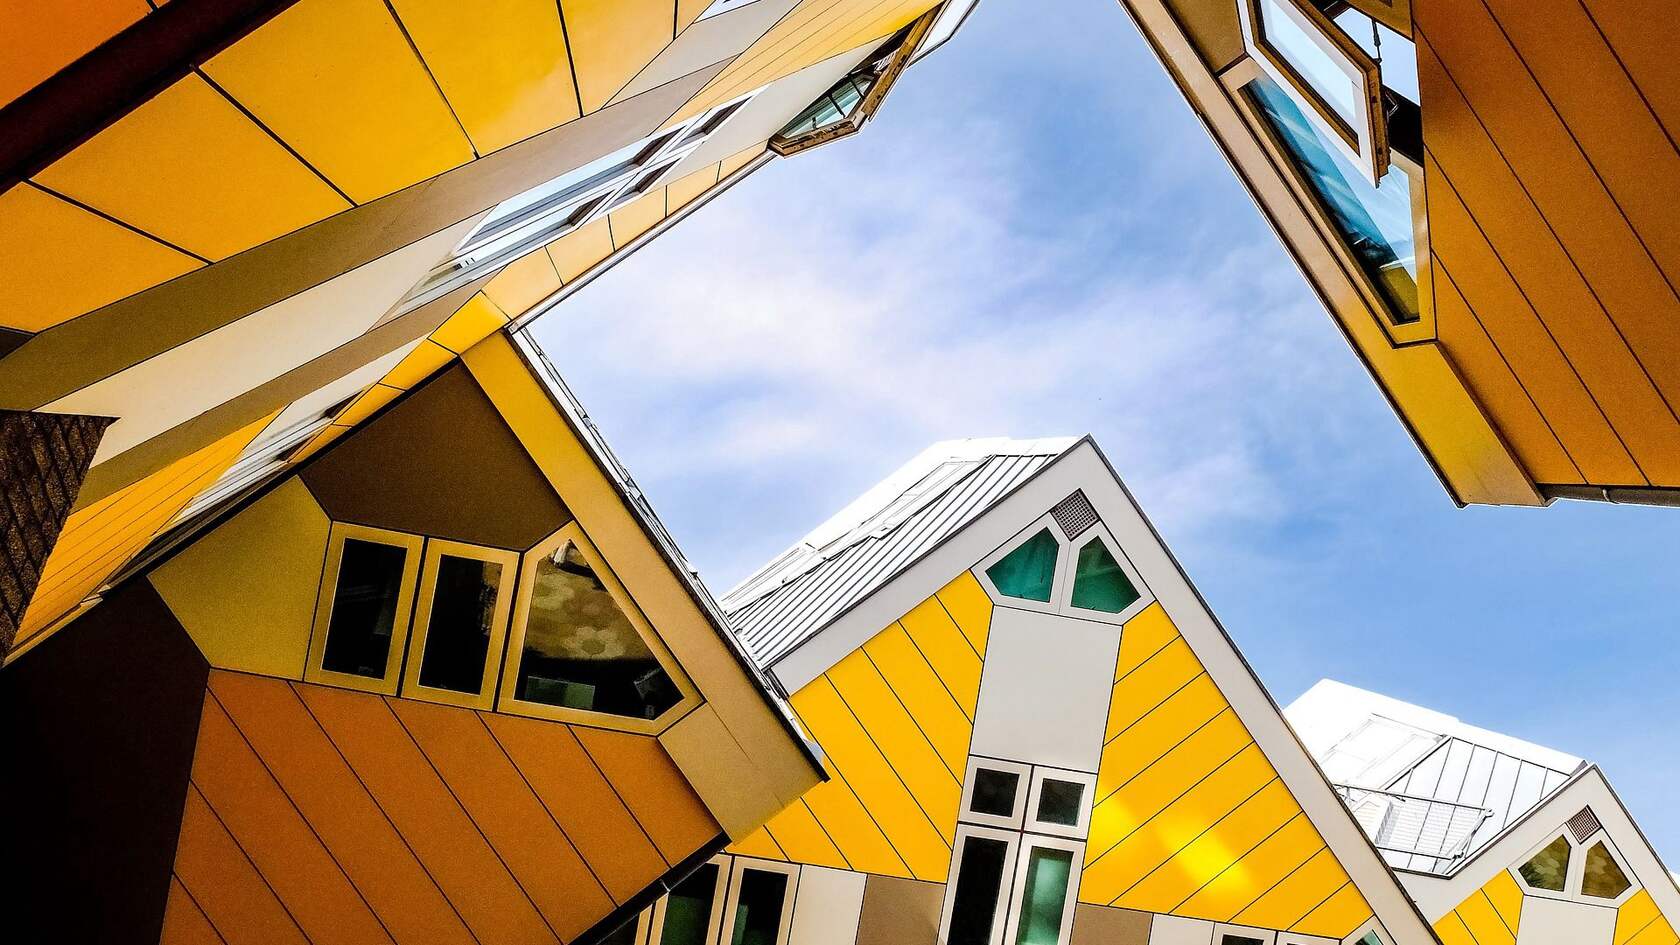 欧洲 荷兰 鹿特丹 创意 设计感十足的奇特立方体房子壁纸图片第6张图片